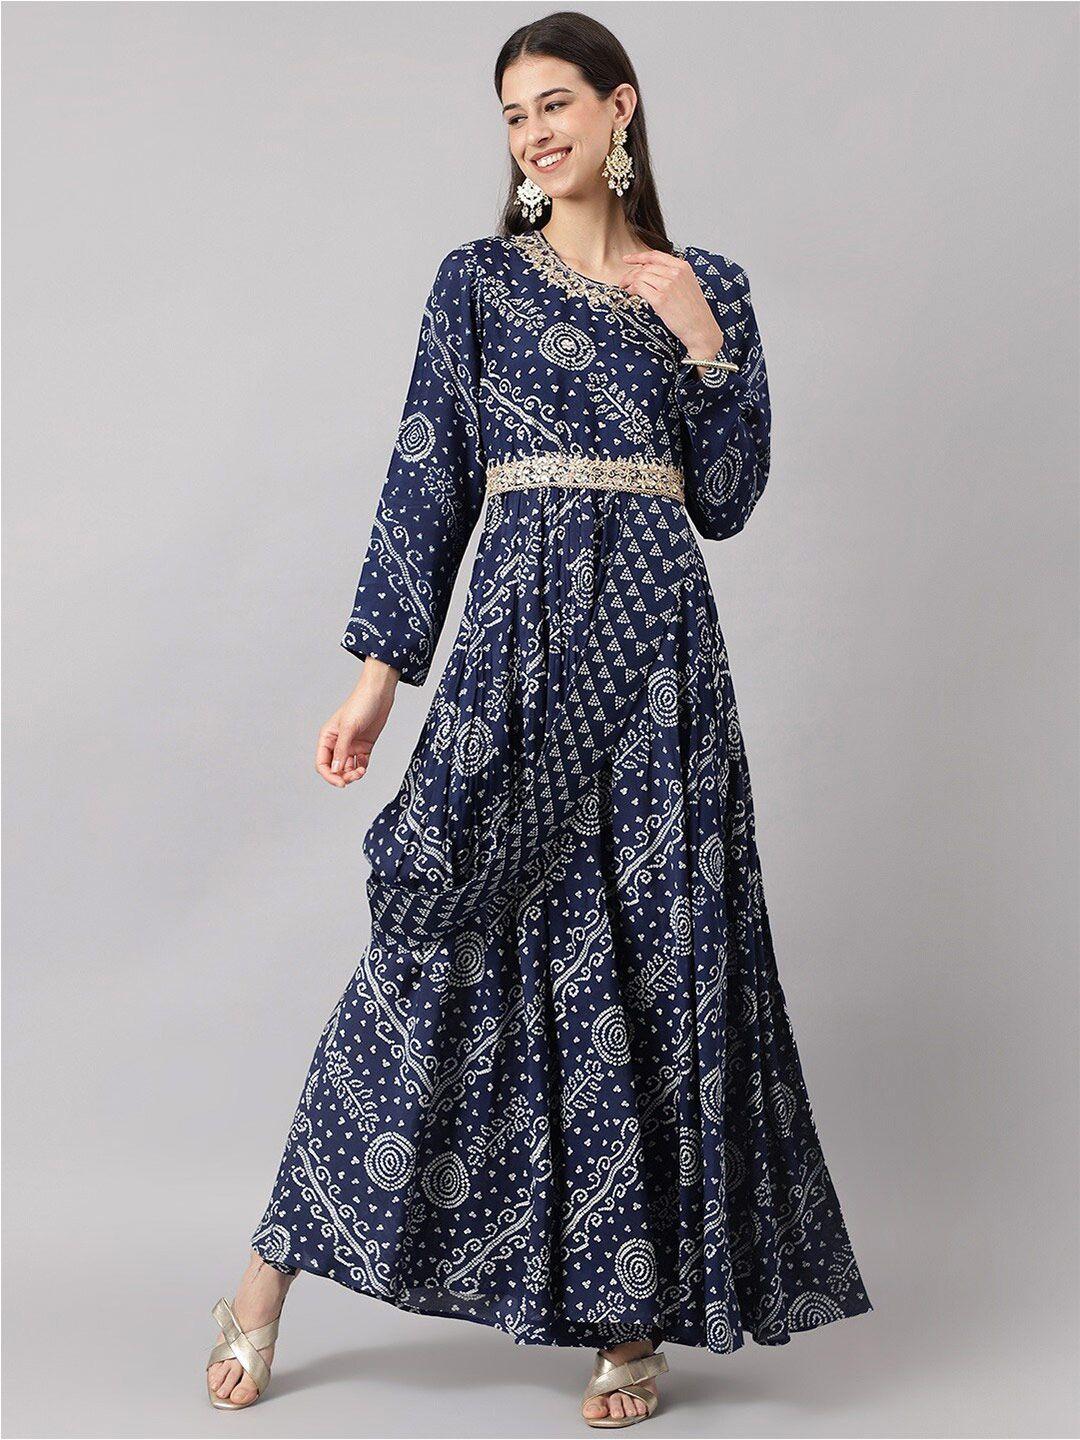 divena navy blue floral maxi dress